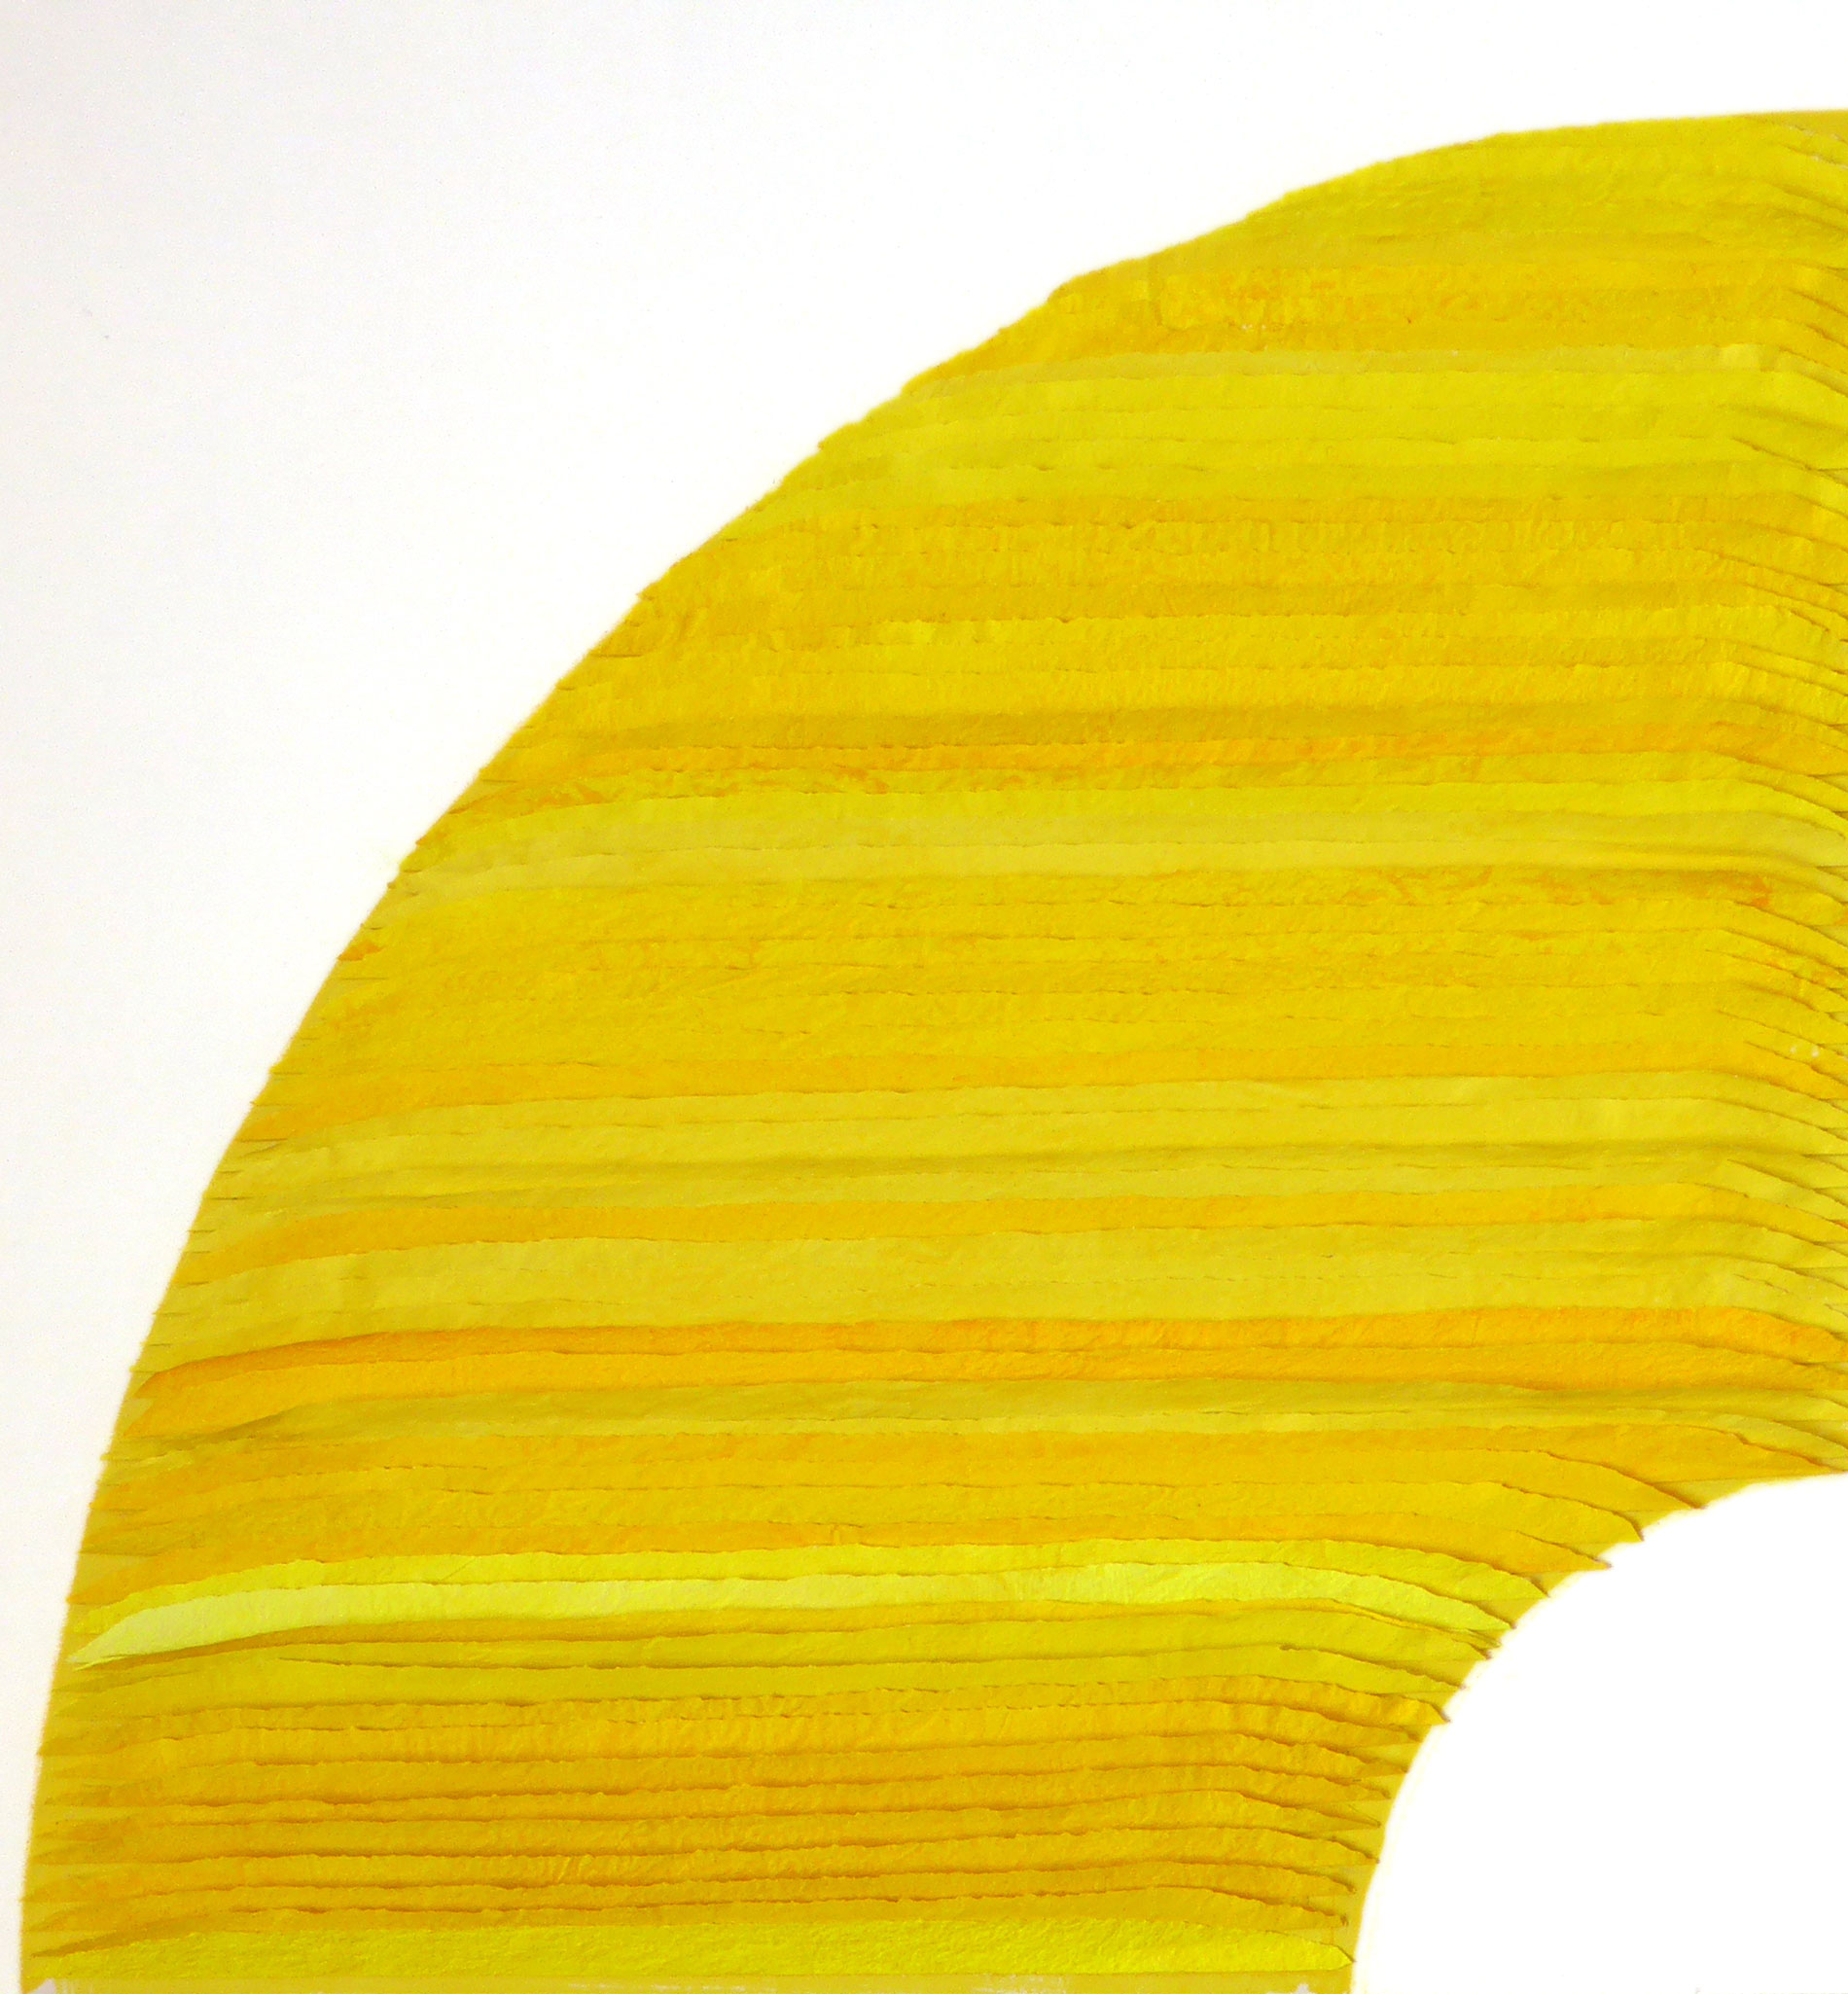 Frieda Martha Papierarbeit, Farbe sehen gelb, 2016